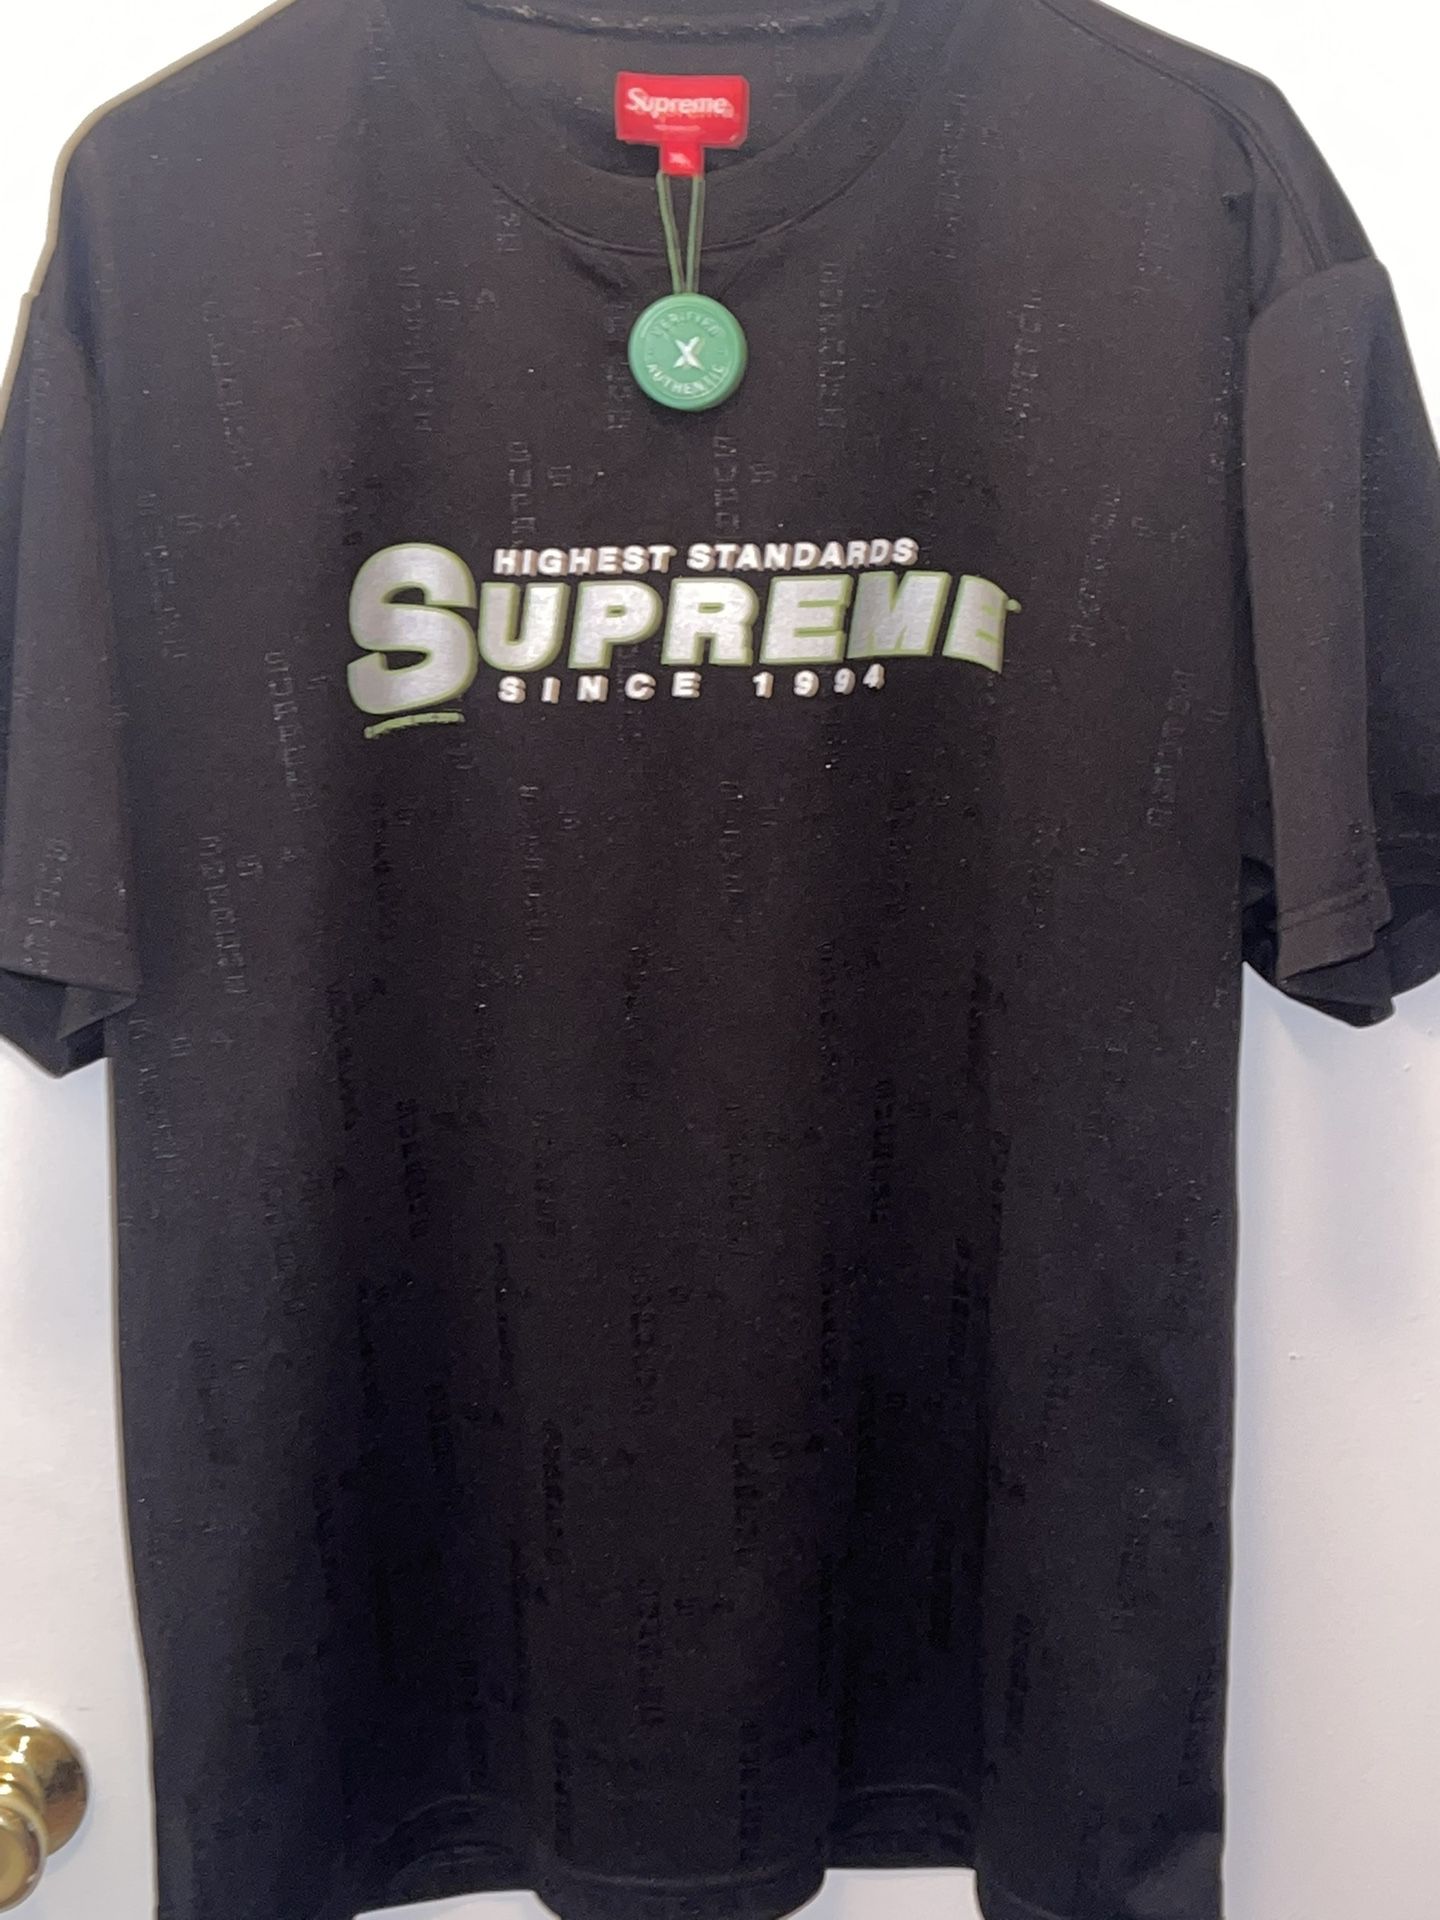 XL Black Supreme Shirt